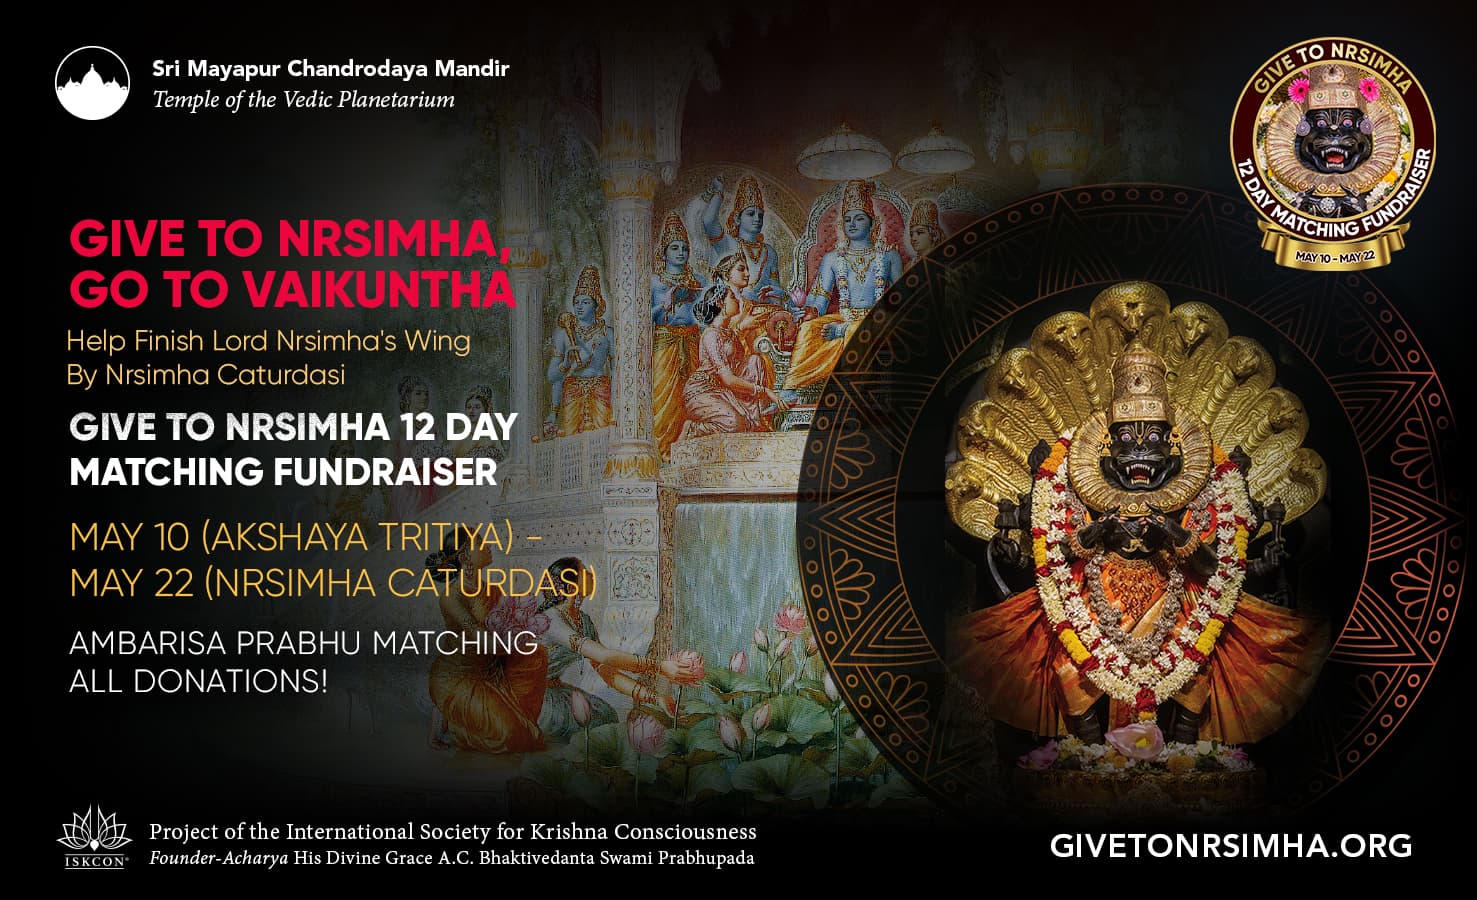 捐给 Nrsimha，去 Vaikuntha：TOVP 12 天配套募捐活动，5 月 10 日至 22 日